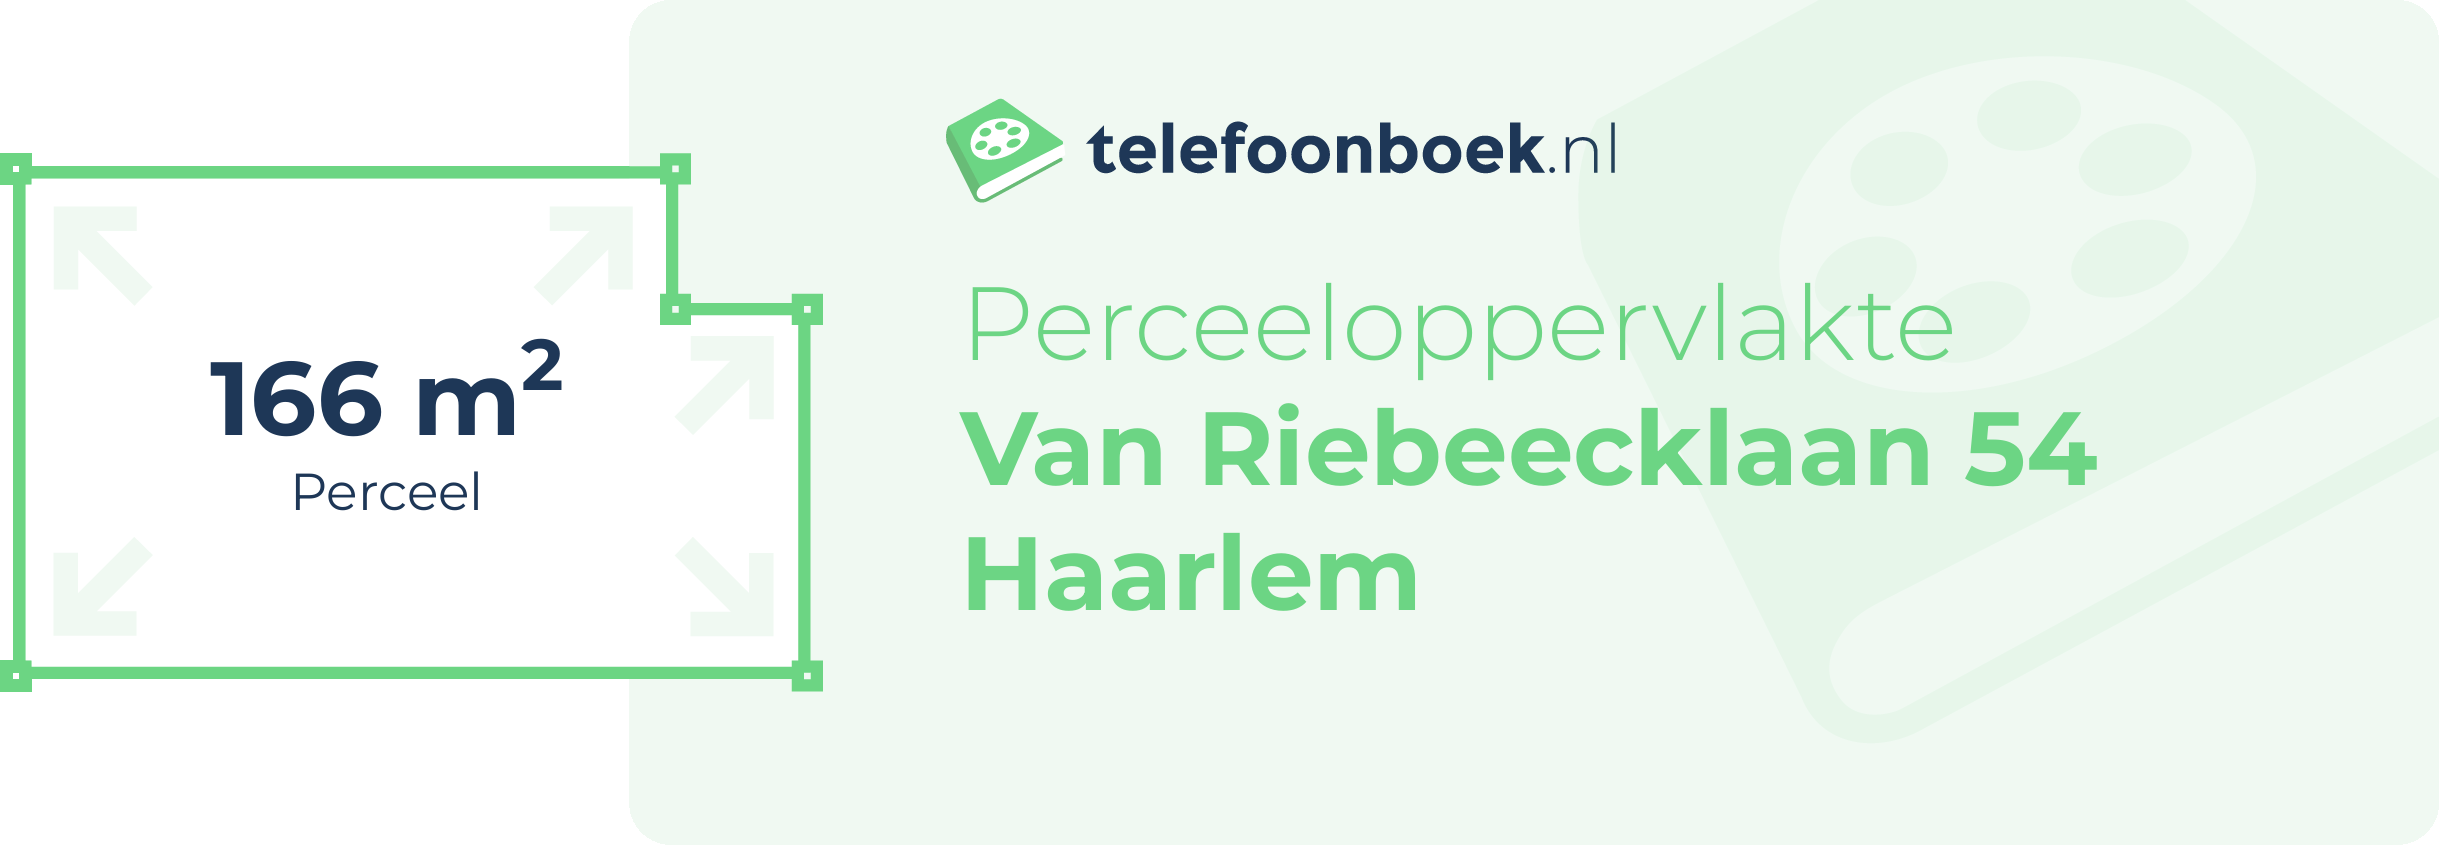 Perceeloppervlakte Van Riebeecklaan 54 Haarlem